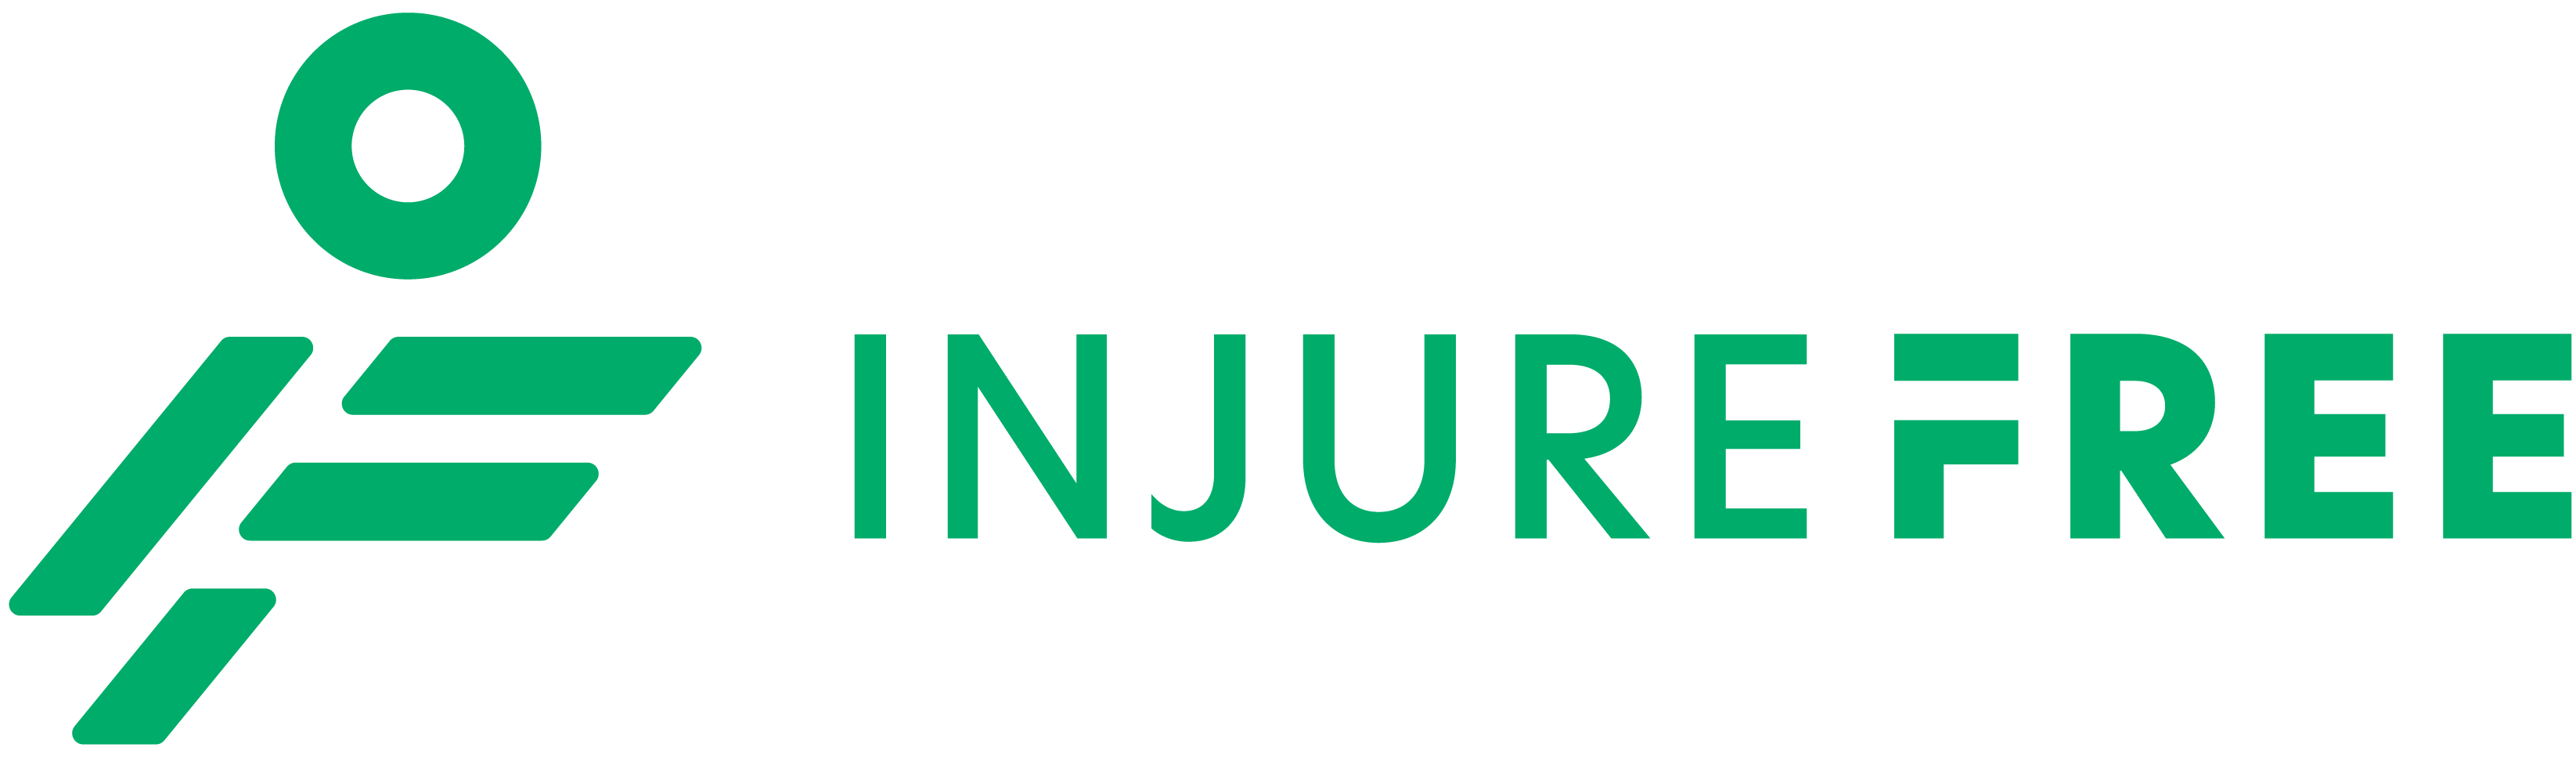 InjureFree-Logo